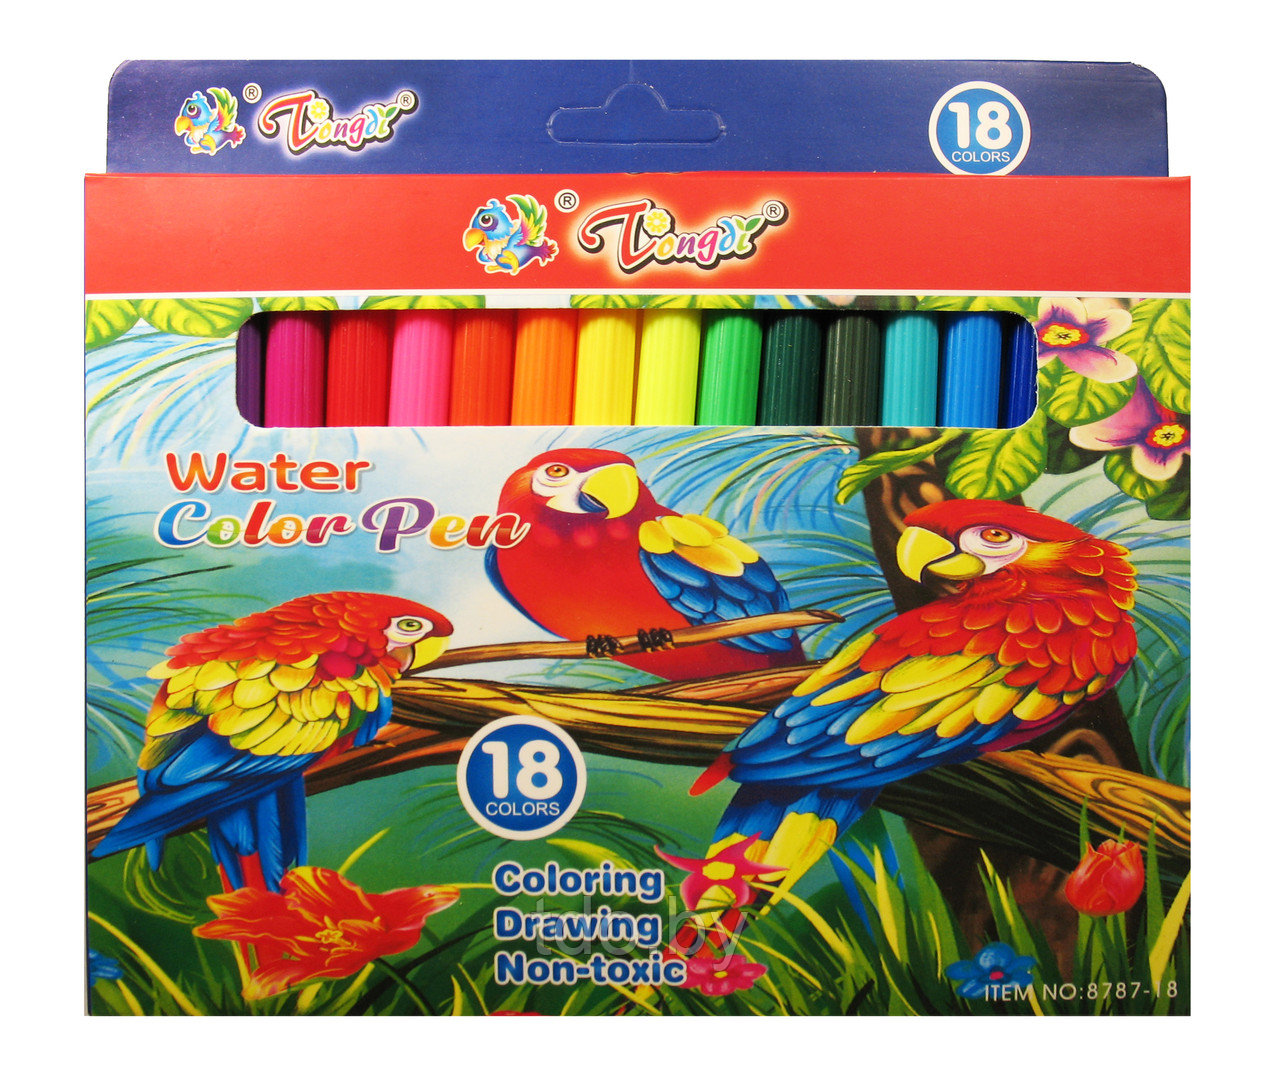 Набор фломастеров 18 цветов, цветной корпус, карт. упаковка с европодвесом, рисунок Попугаи